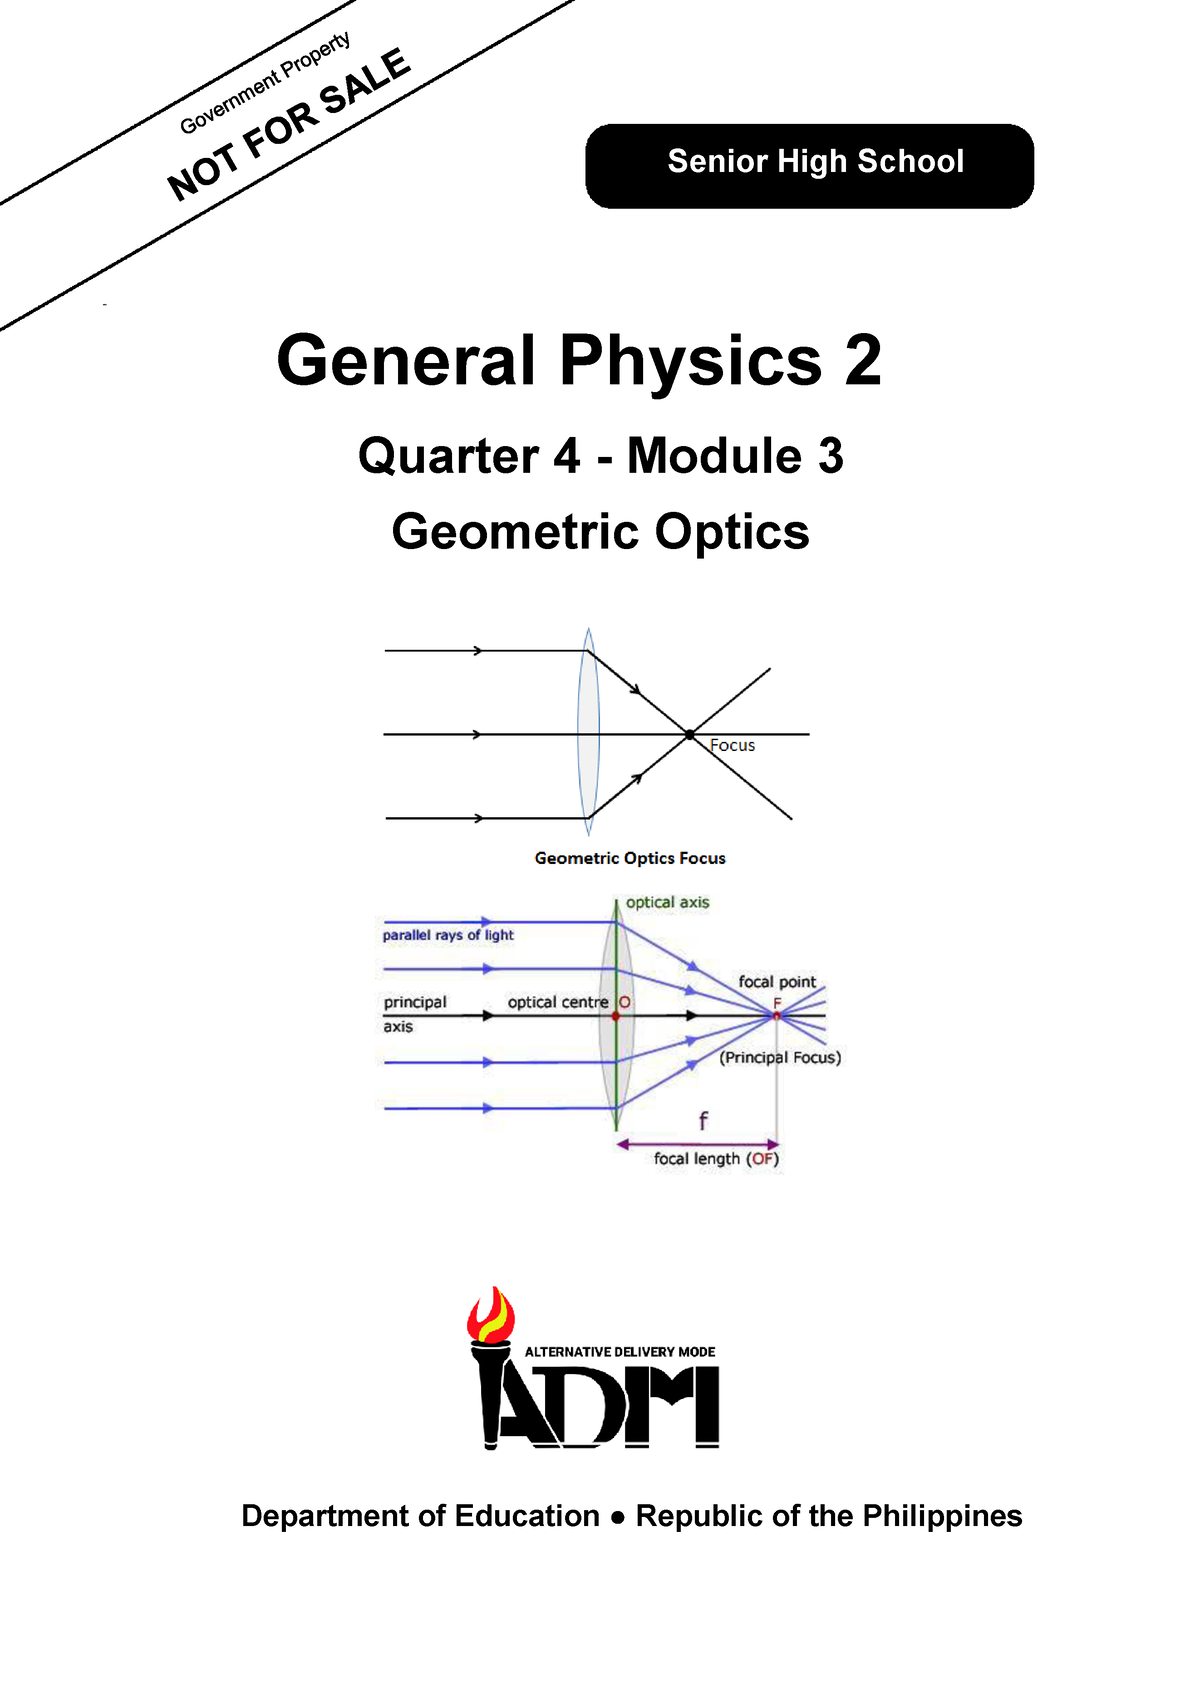 General Physics II